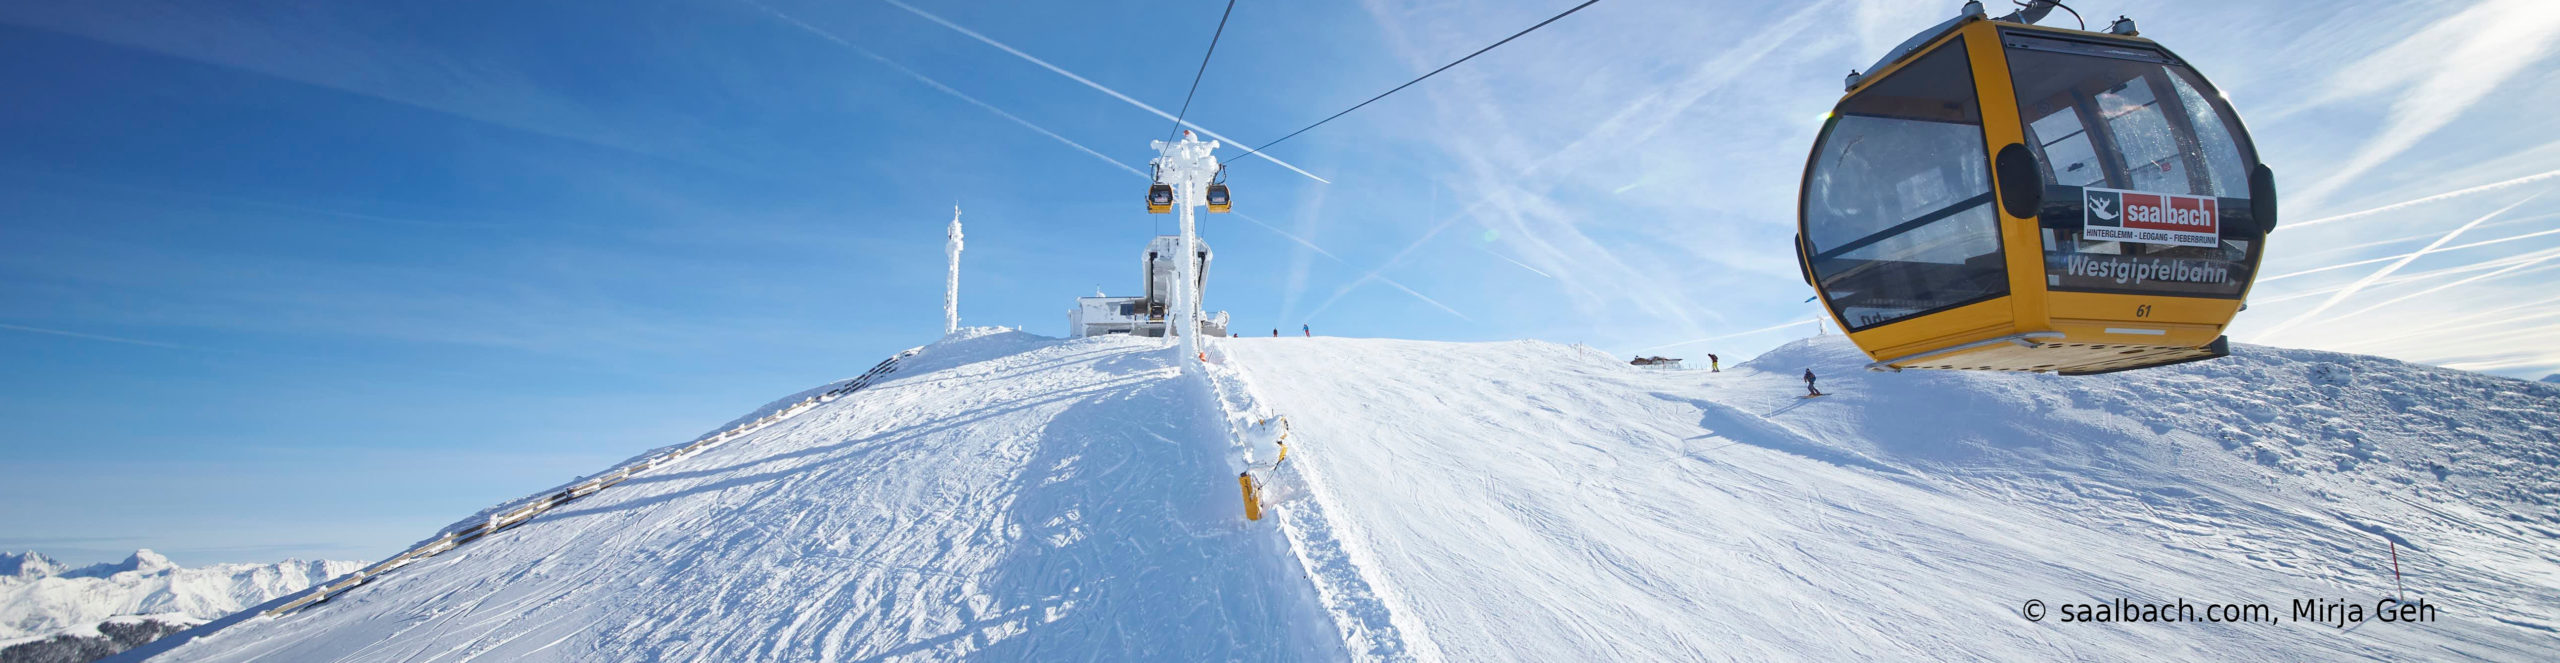 SAALBACH HINTERGLEMM – Skiwochenende nur Schritte vom Lift mit Eigenanreise 